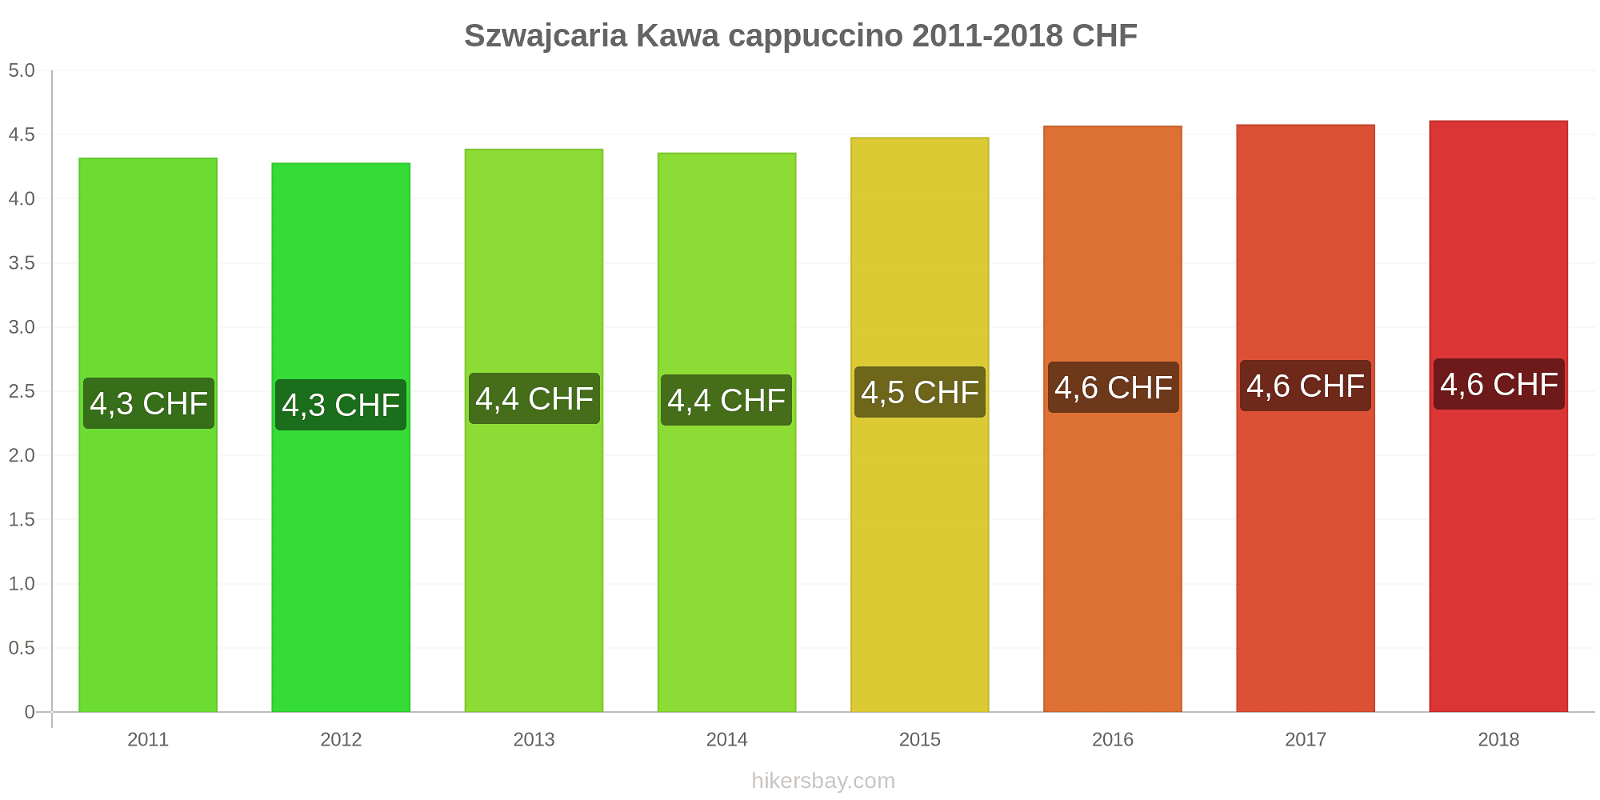 Szwajcaria zmiany cen Kawa cappuccino hikersbay.com